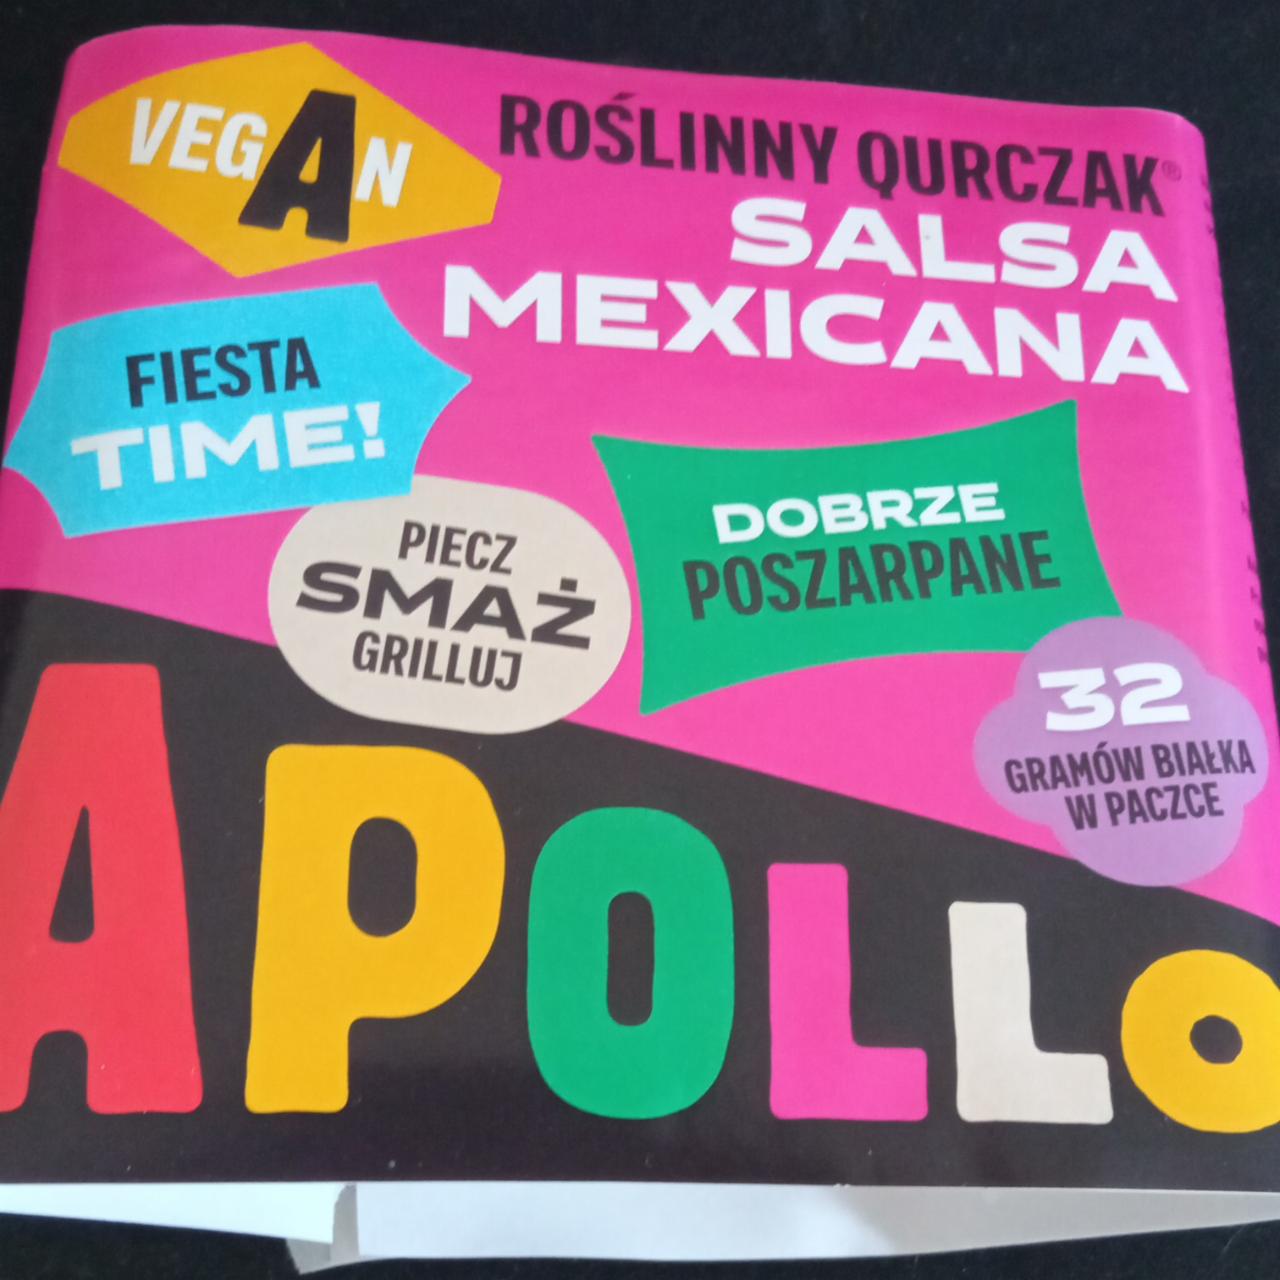 Zdjęcia - Roślinny qurczak salsa mexicana Apollo